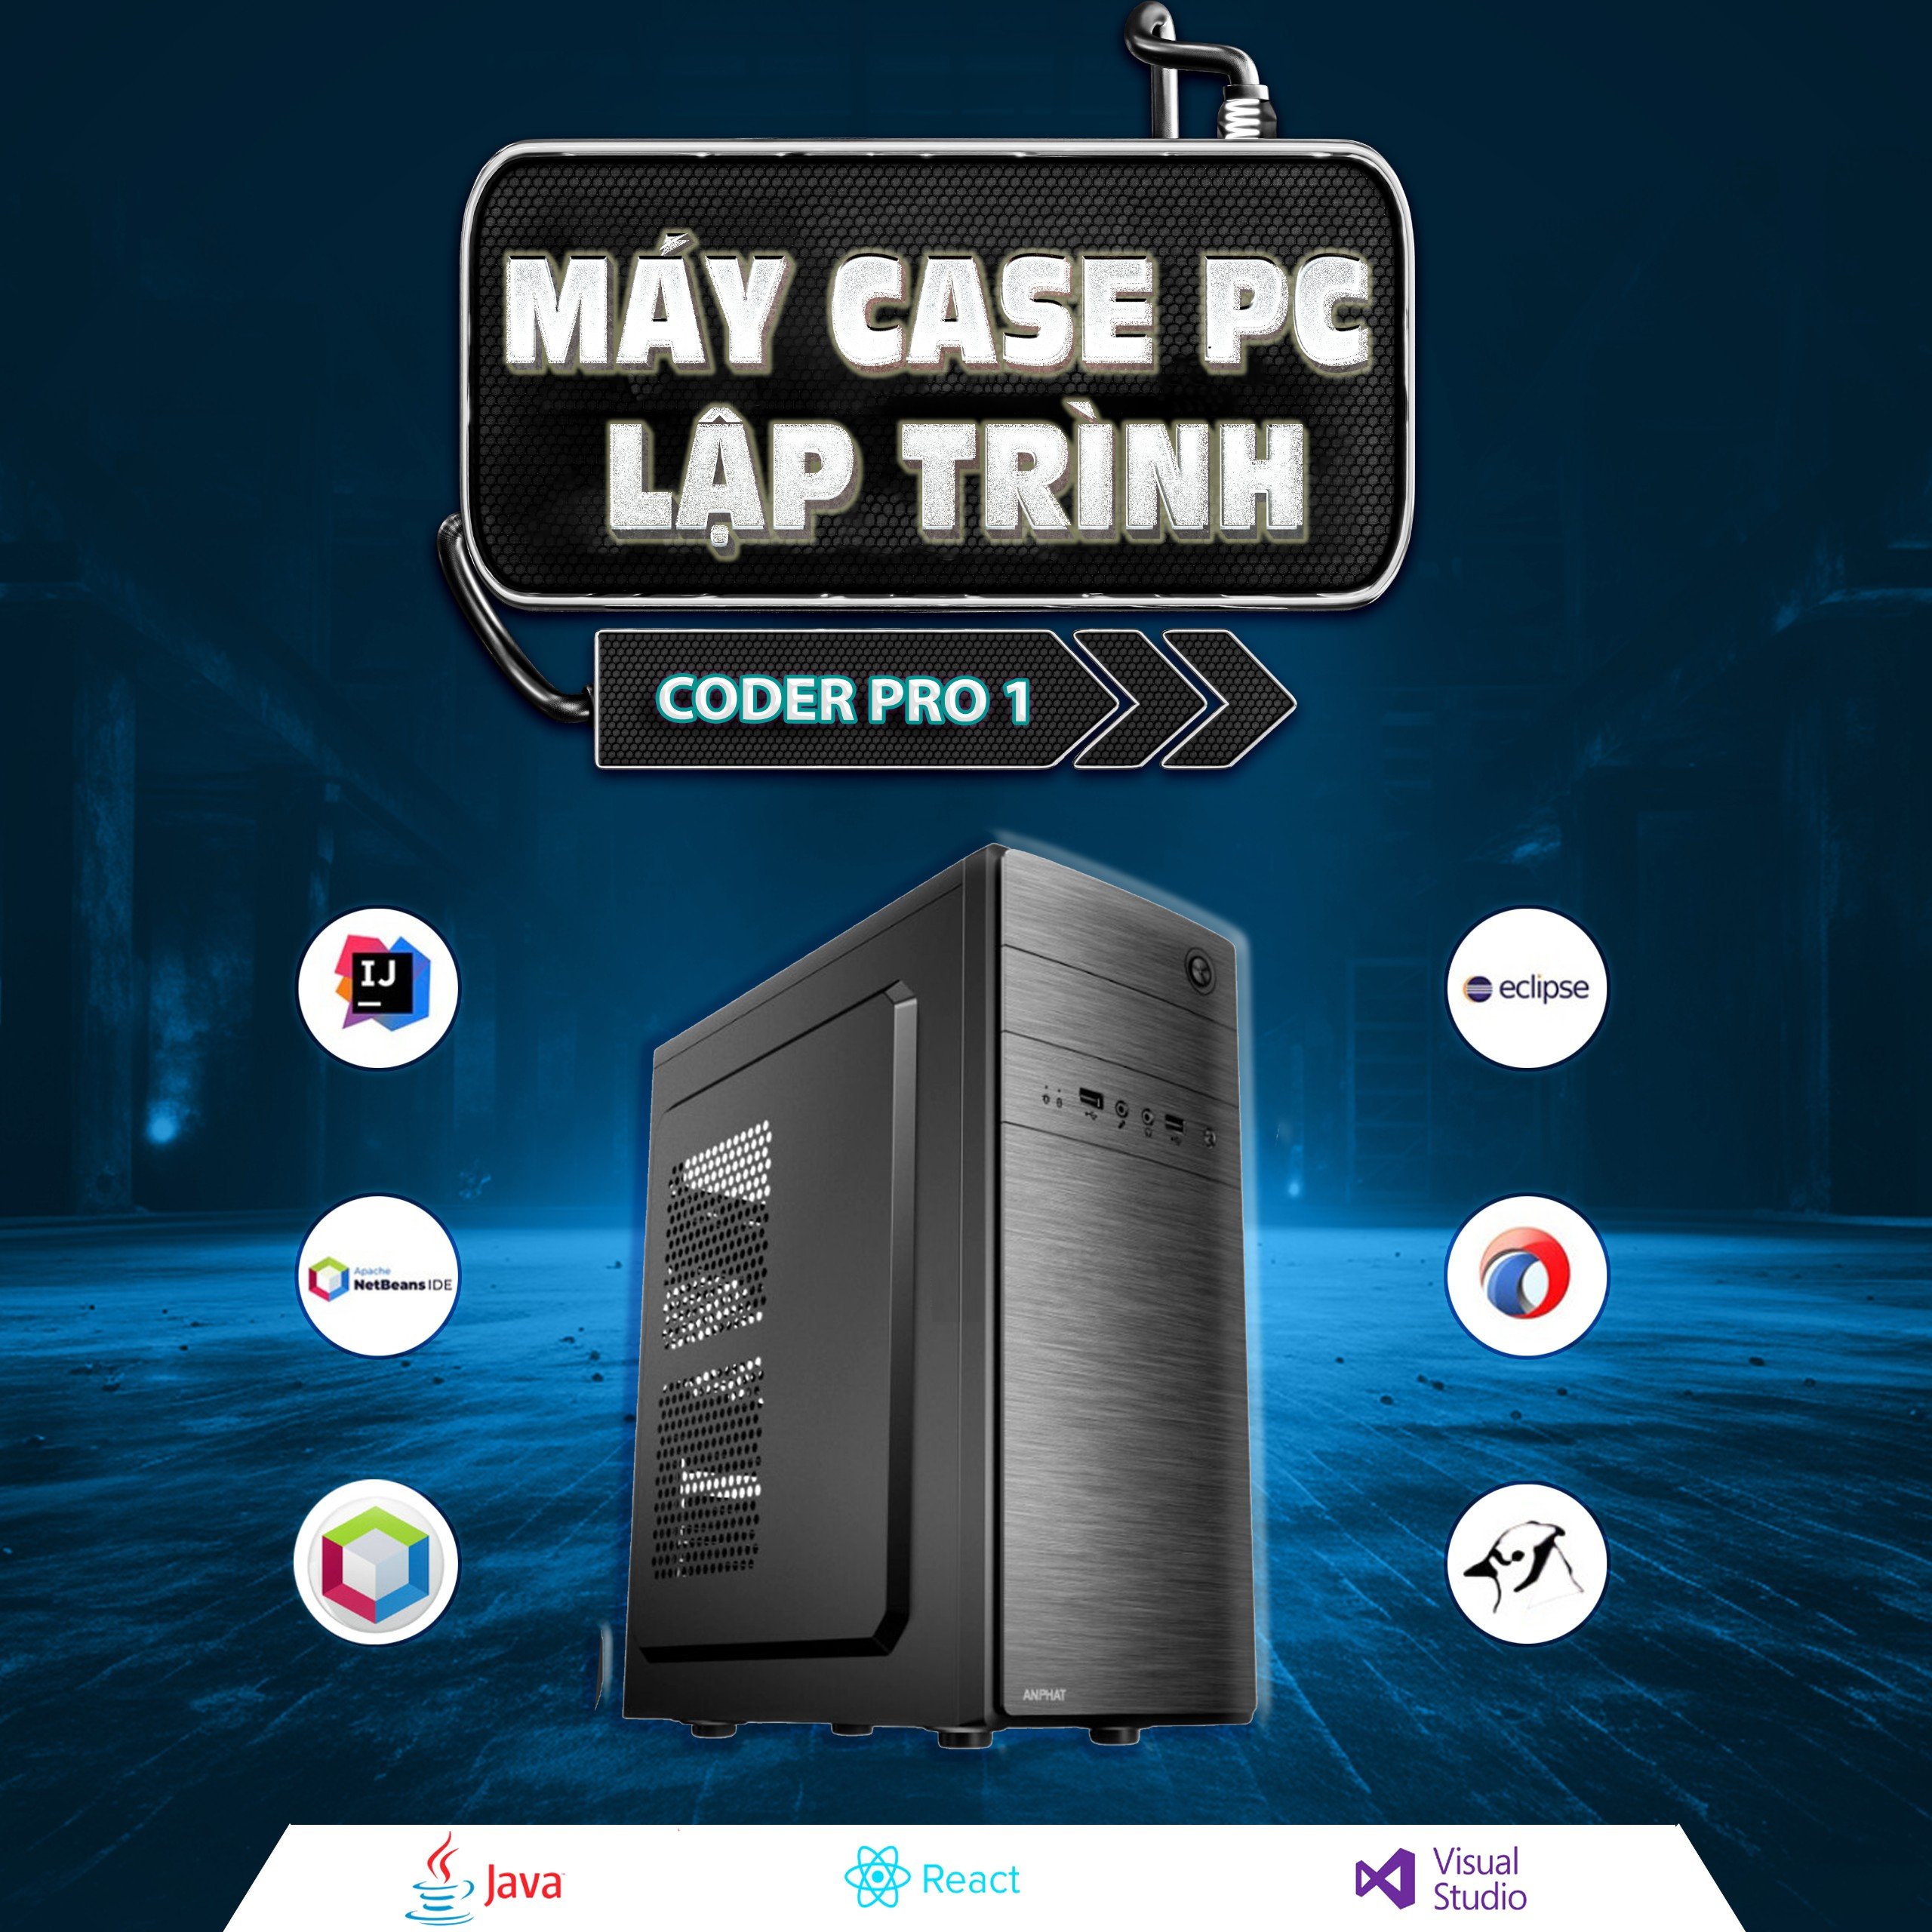 PCAP Coder PRO 1 ( Ryzen 5 4600G | 16GB RAM | SSD 240GB ) - Bộ case máy tính học lập trình coding giá rẻ tối ưu tốc độ nhanh nhất dành cho Coder chuyên nghiệp